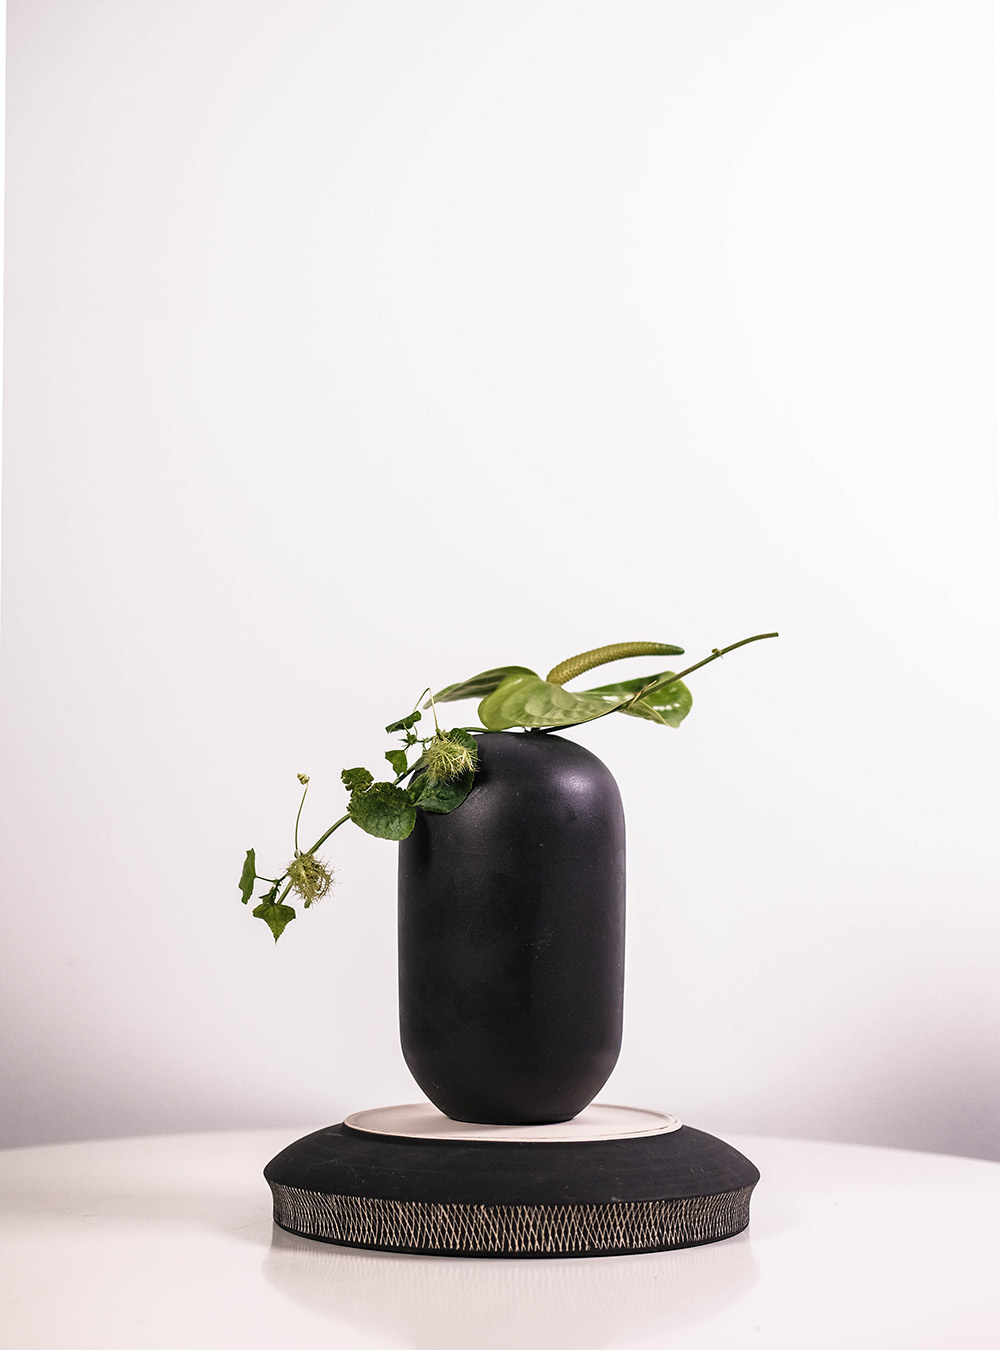 Black vase in Japandi style